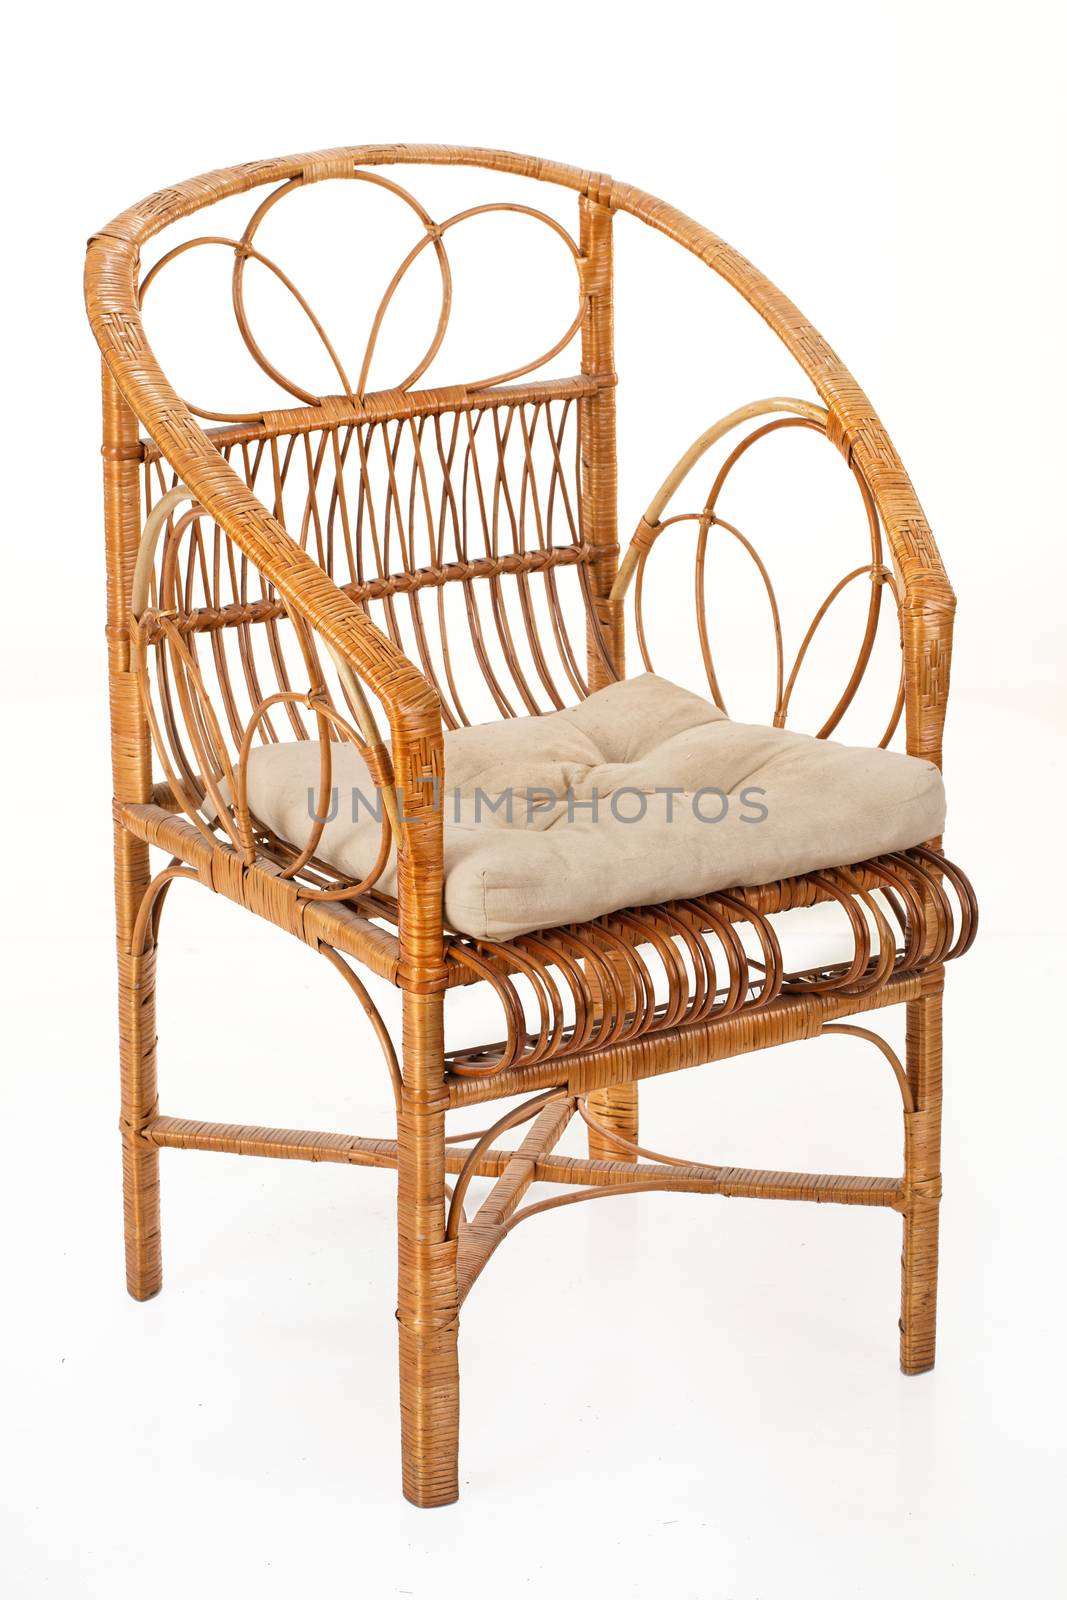 Wicker Armchair by Fotoskat